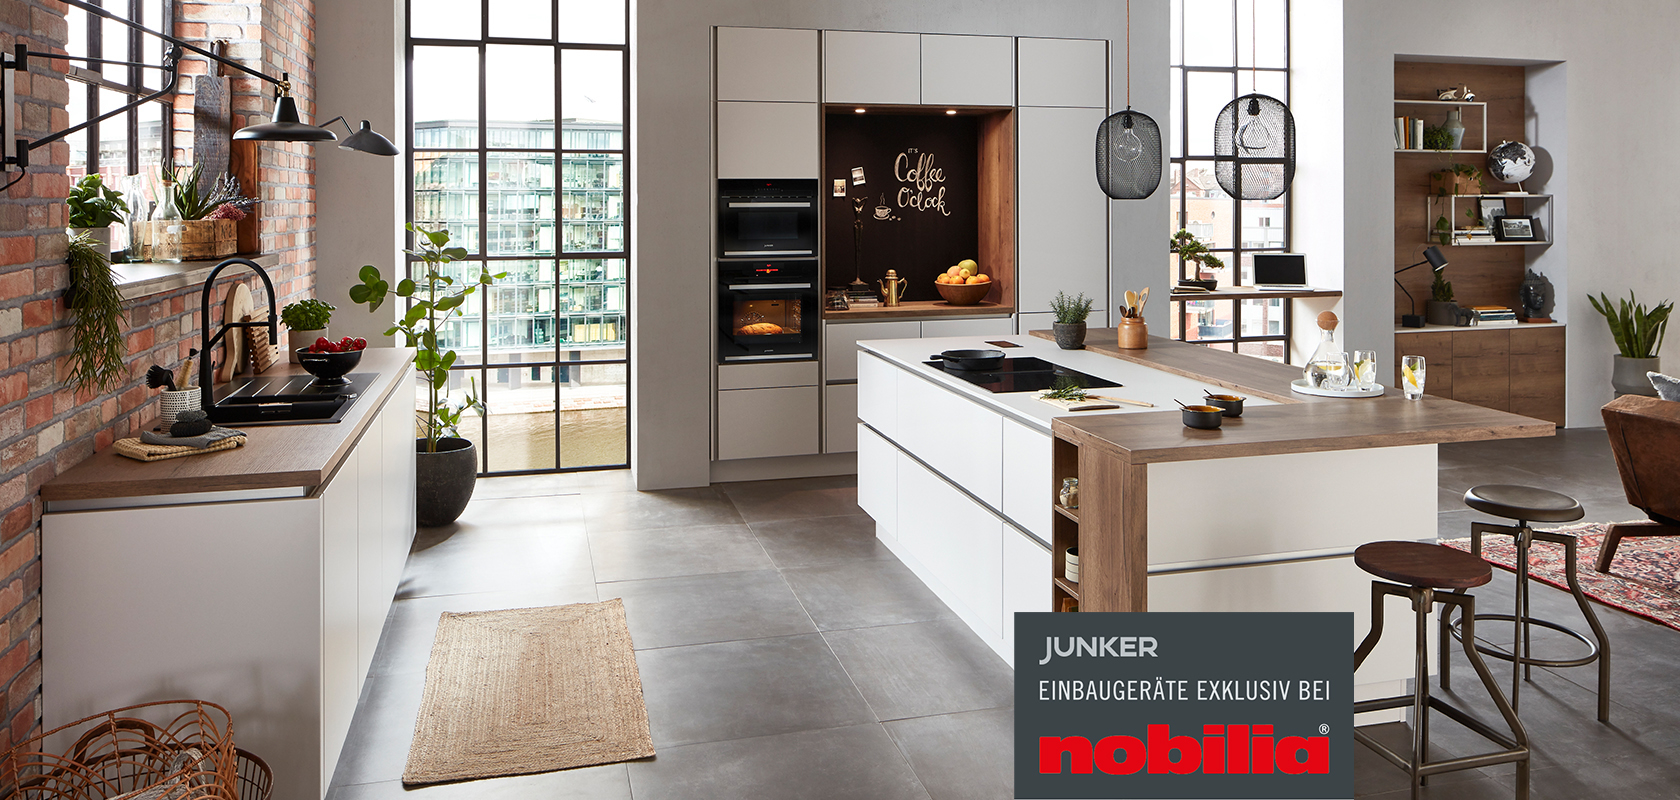 Großzügige, offene Küche mit angrenzendem Wohnbereich, Front Fashion 171 in Seidengrau, mit integrierten Junker Einbaugeräten exklusiv bei nobilia.